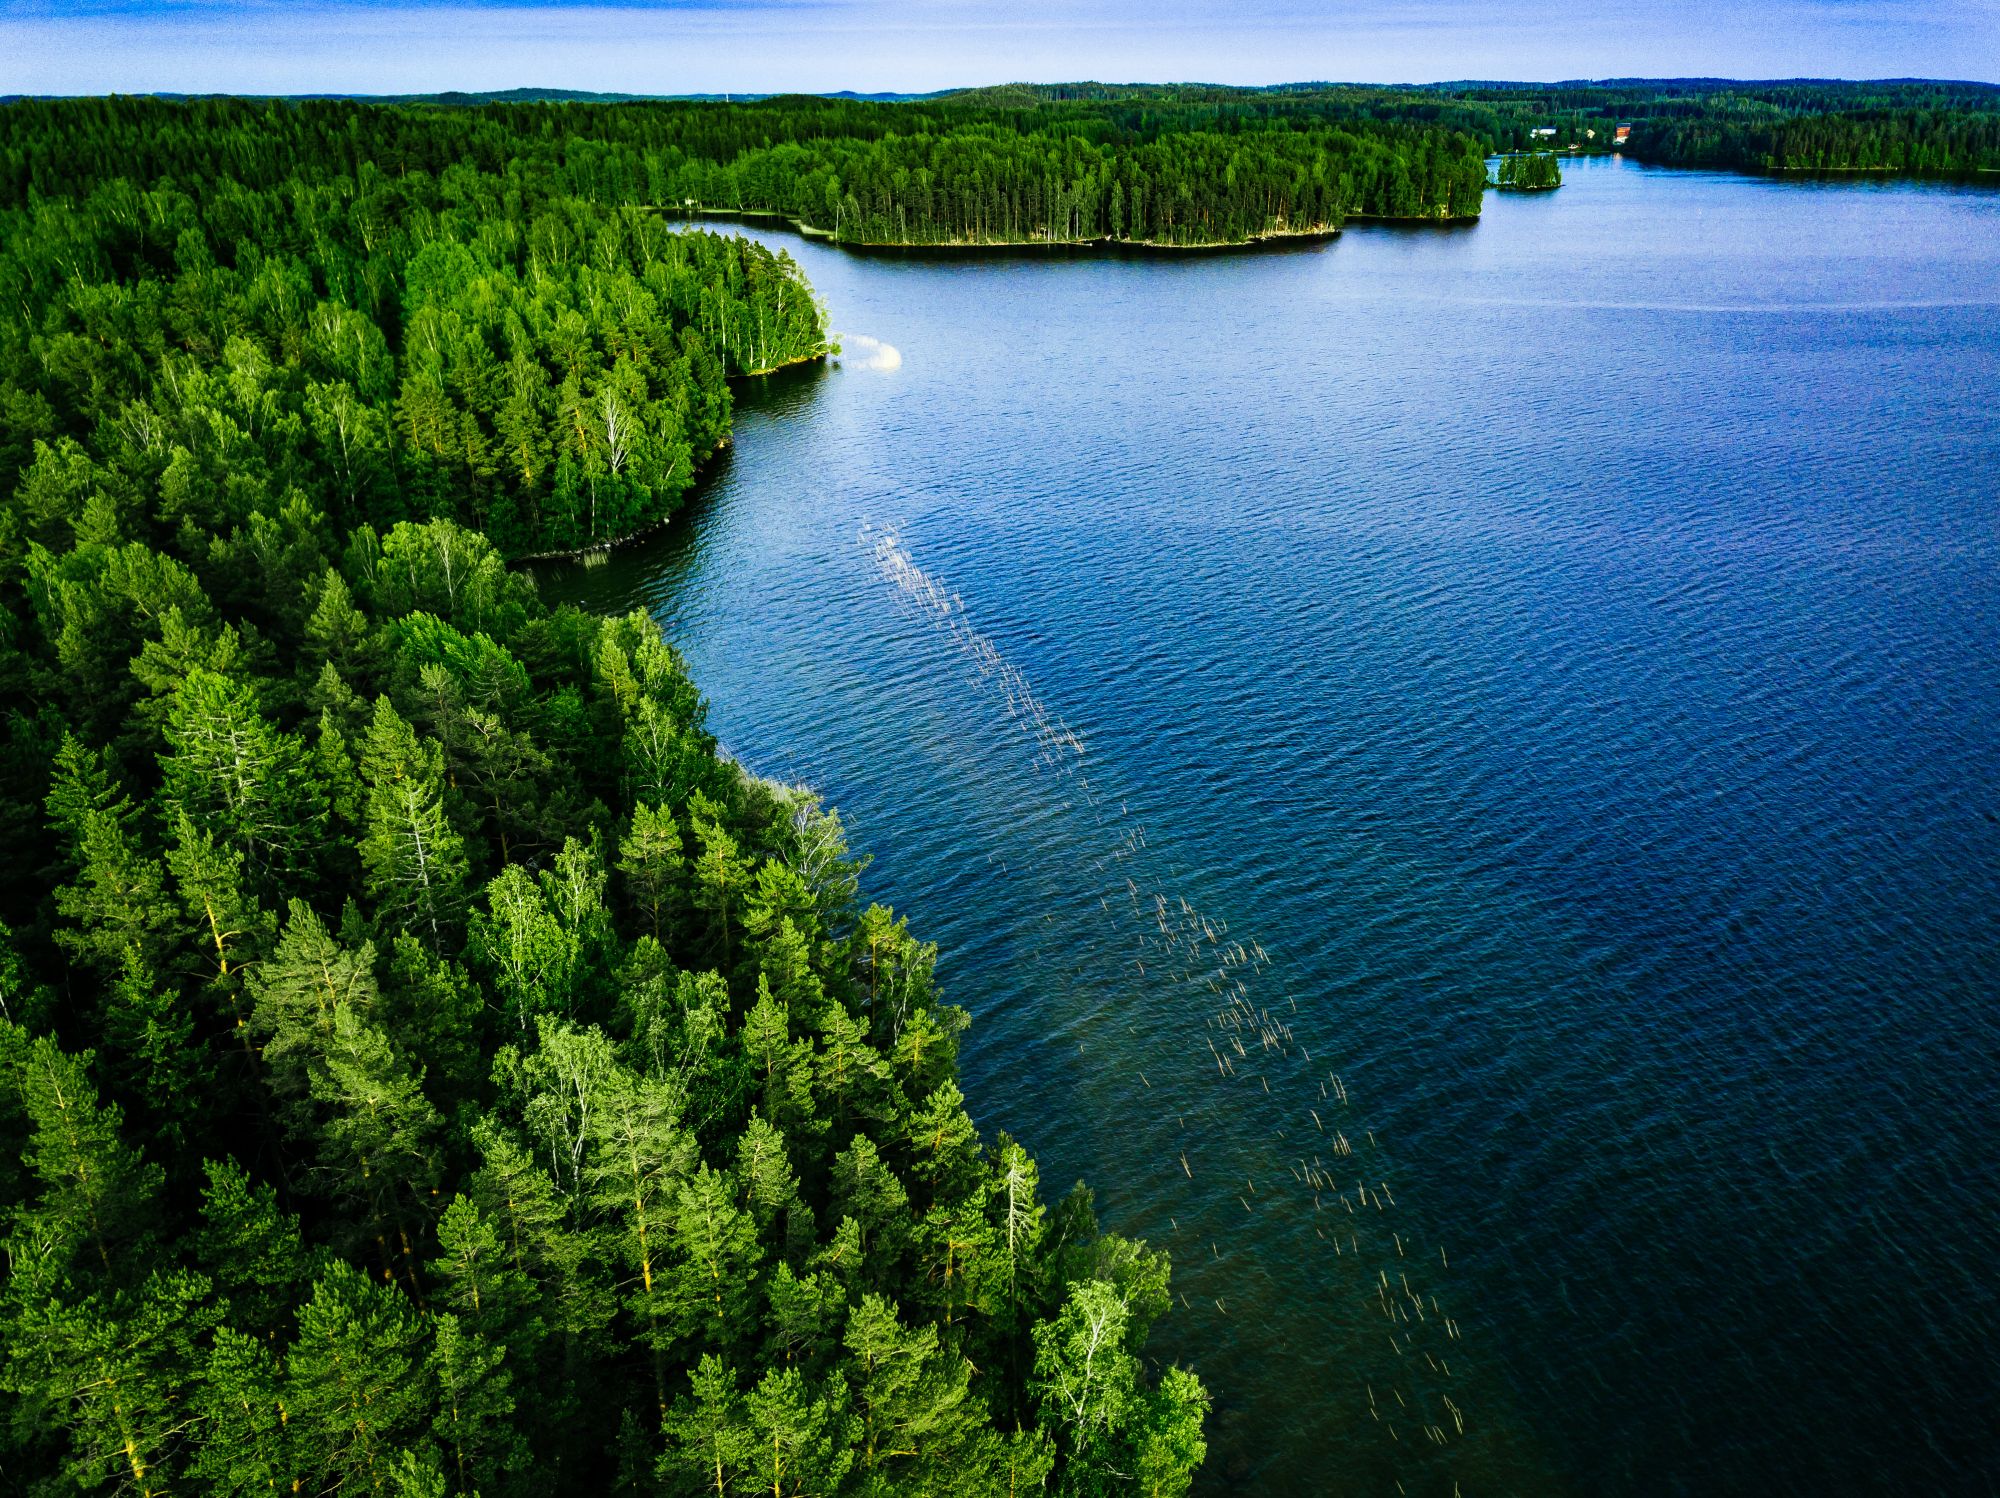 Suomalainen järvimaisema, jossa henki kulkee vapaasti